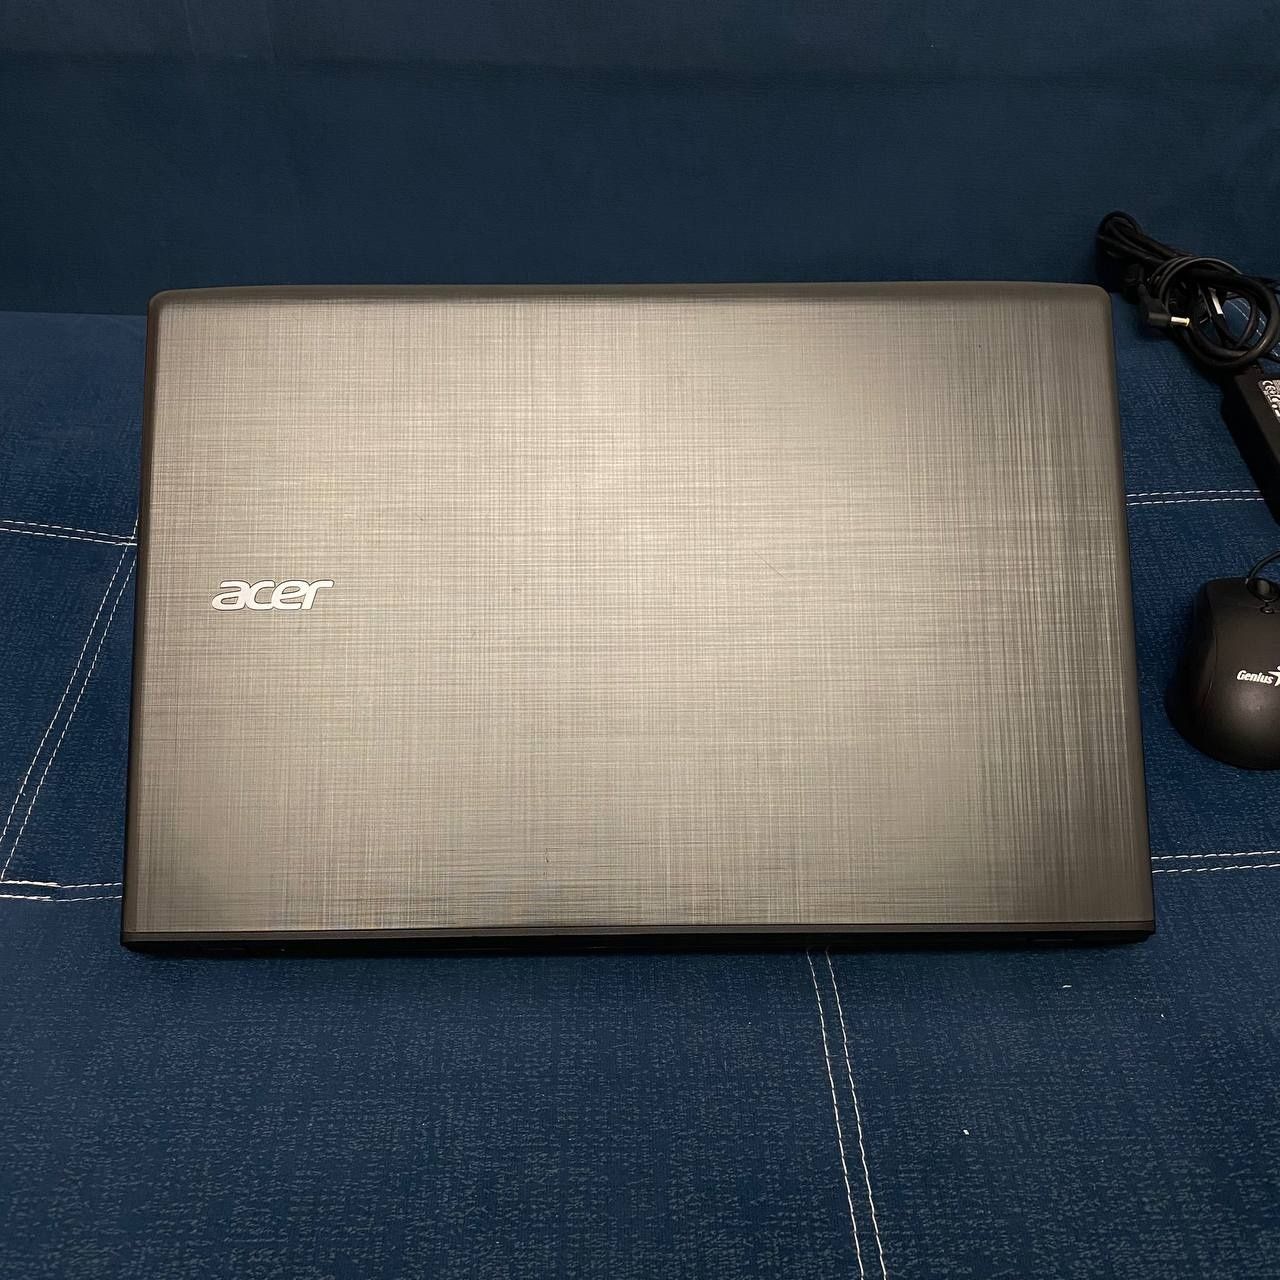 Игровой Acer Aspire /Core i3-6Gen/NVIDIA GeForce 940MX/Мышка и зарядка